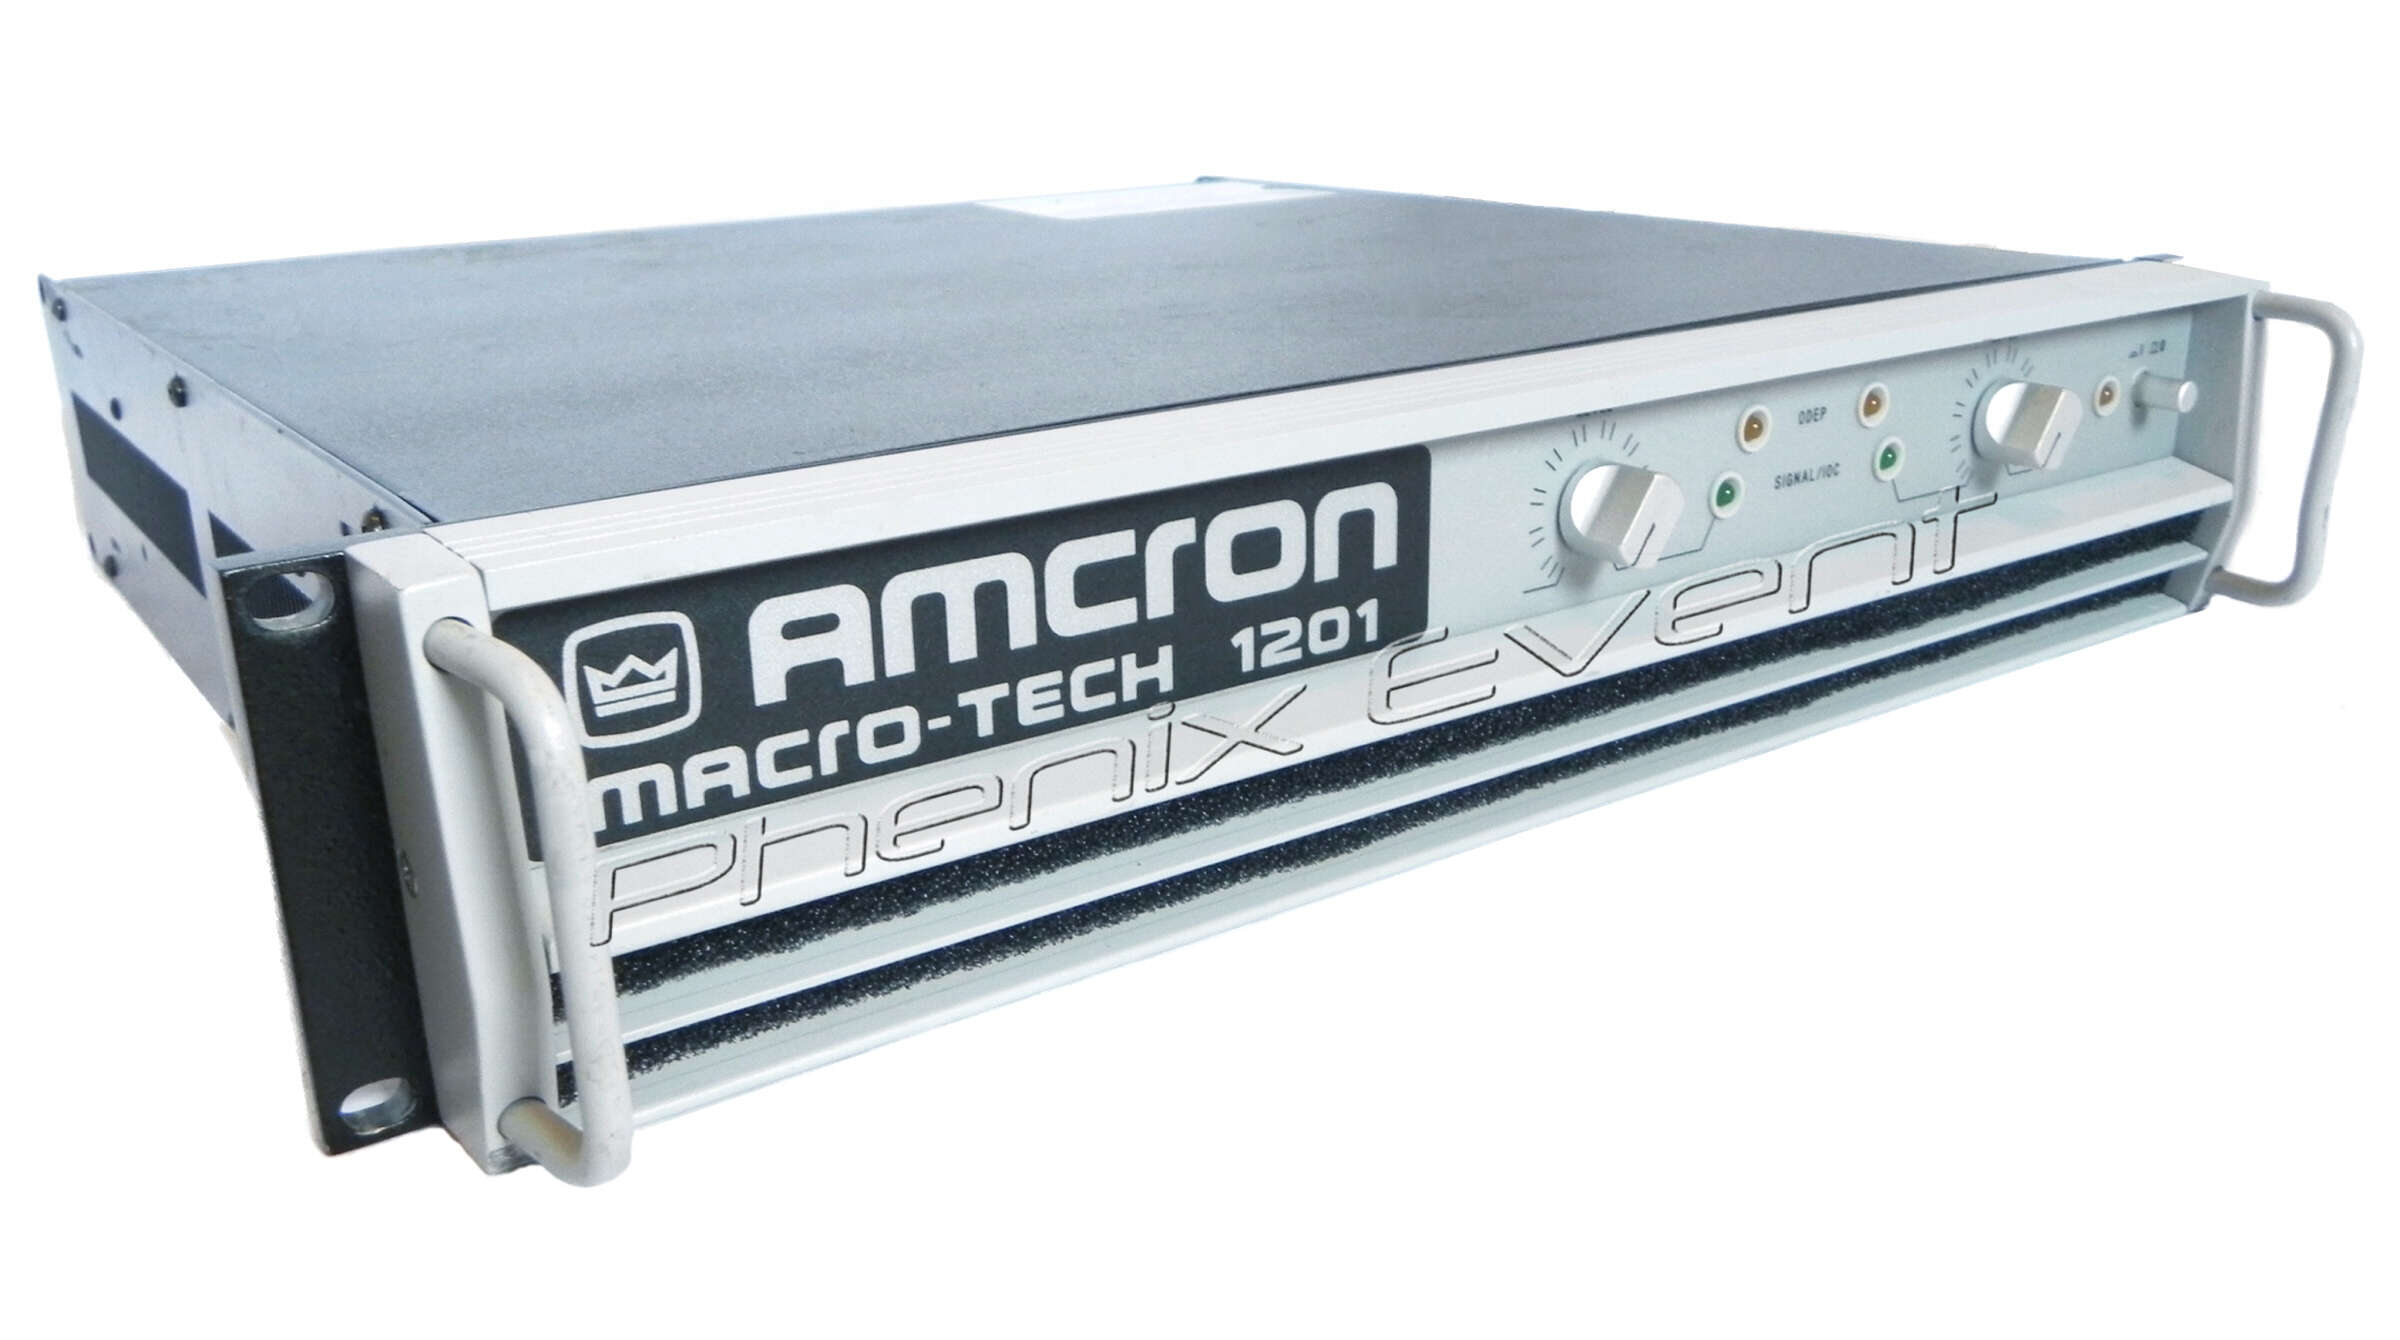 Amcron Macro Tech Ma 1201 Vue Profil Hd